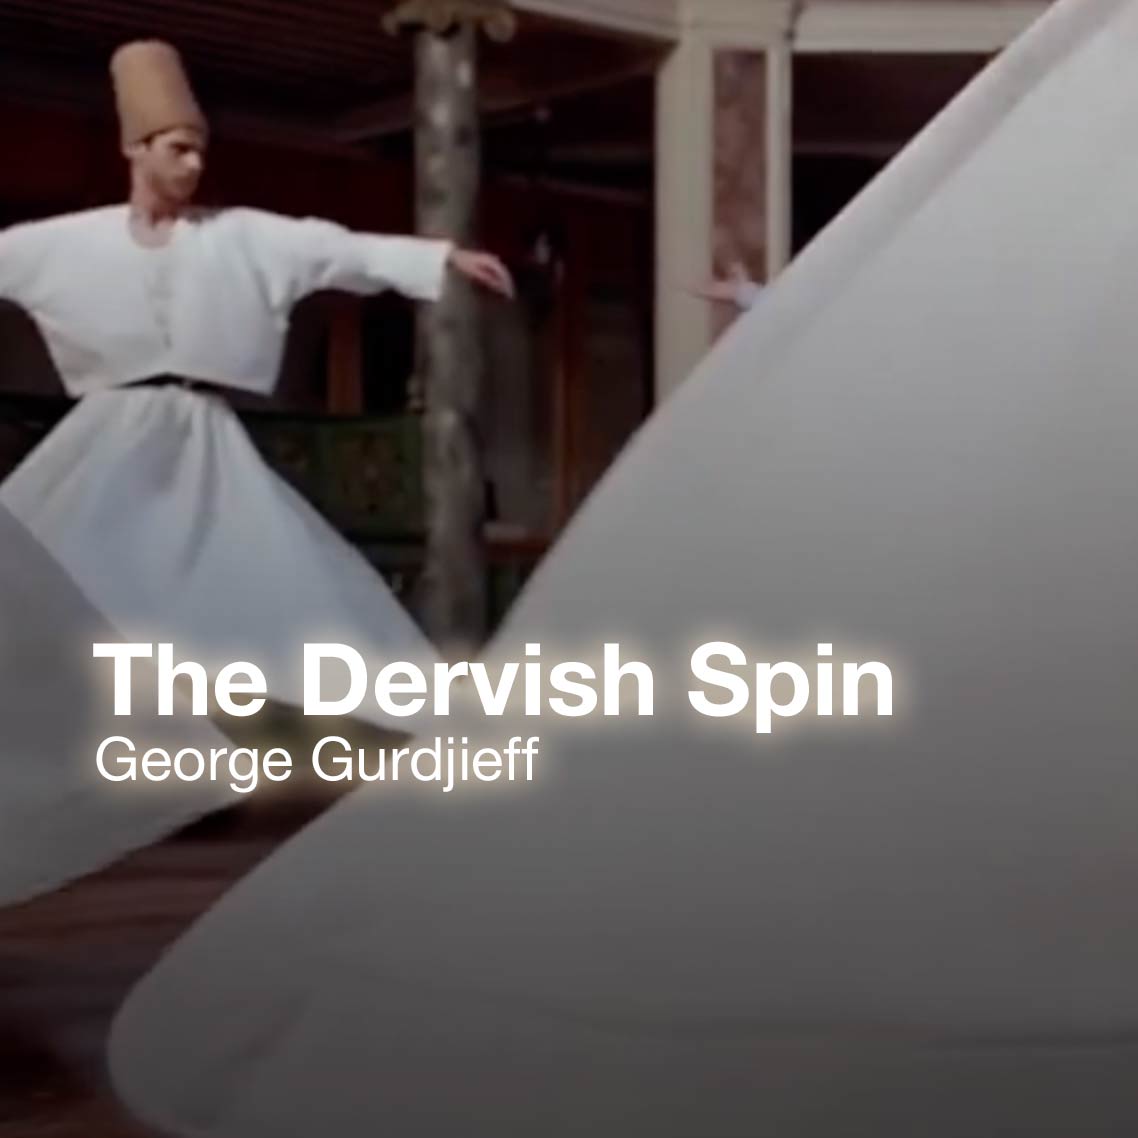 Gurdjieff dances The Dervish Spin